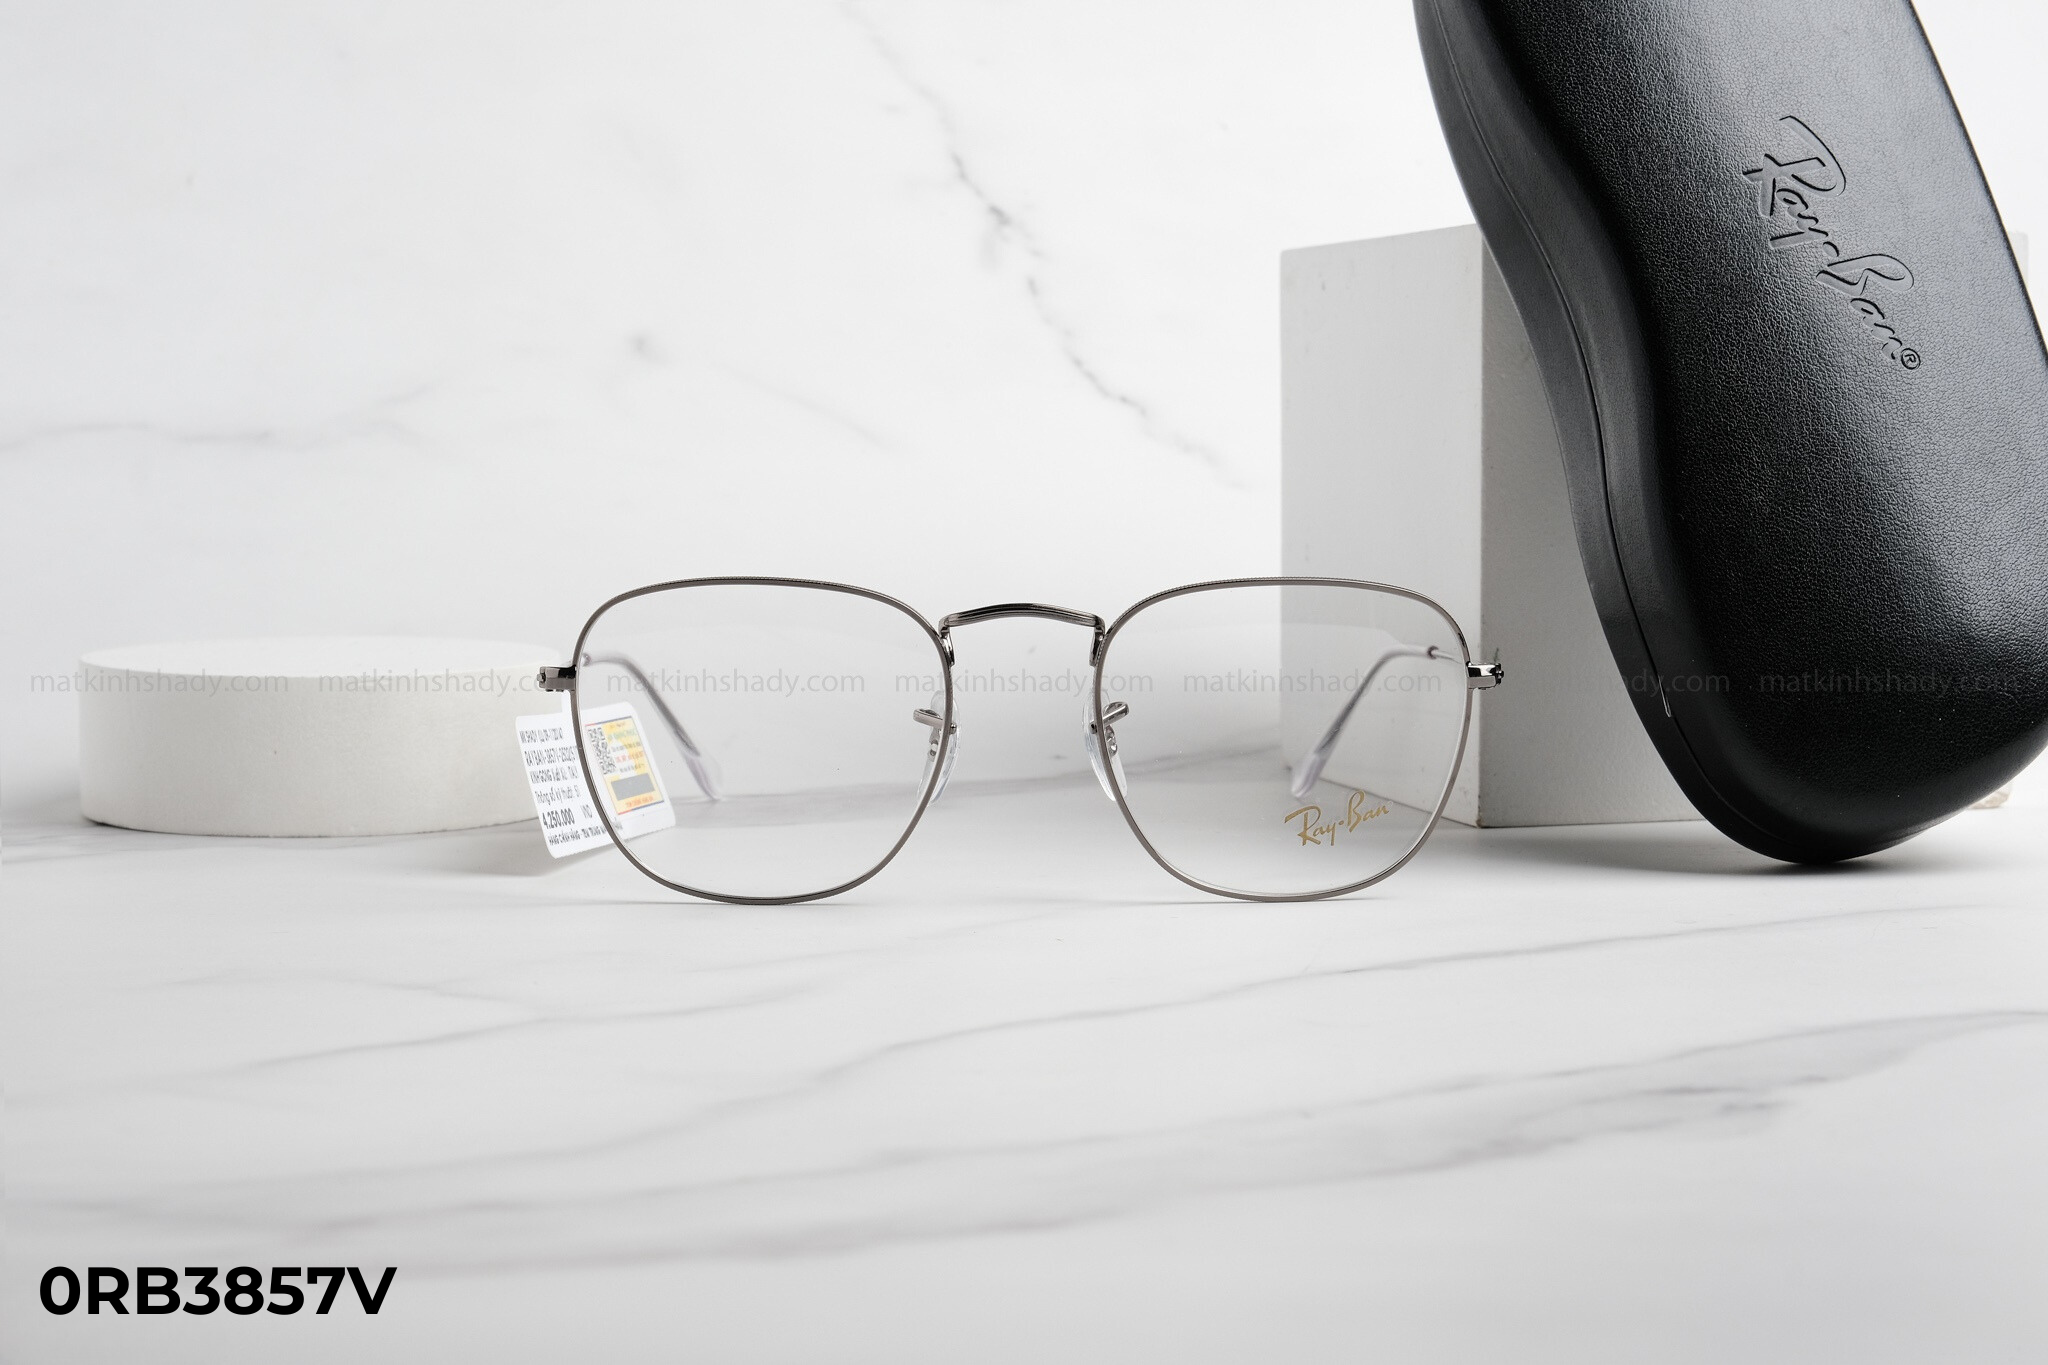  Rayban Eyewear - Glasses - 0RB3857v 